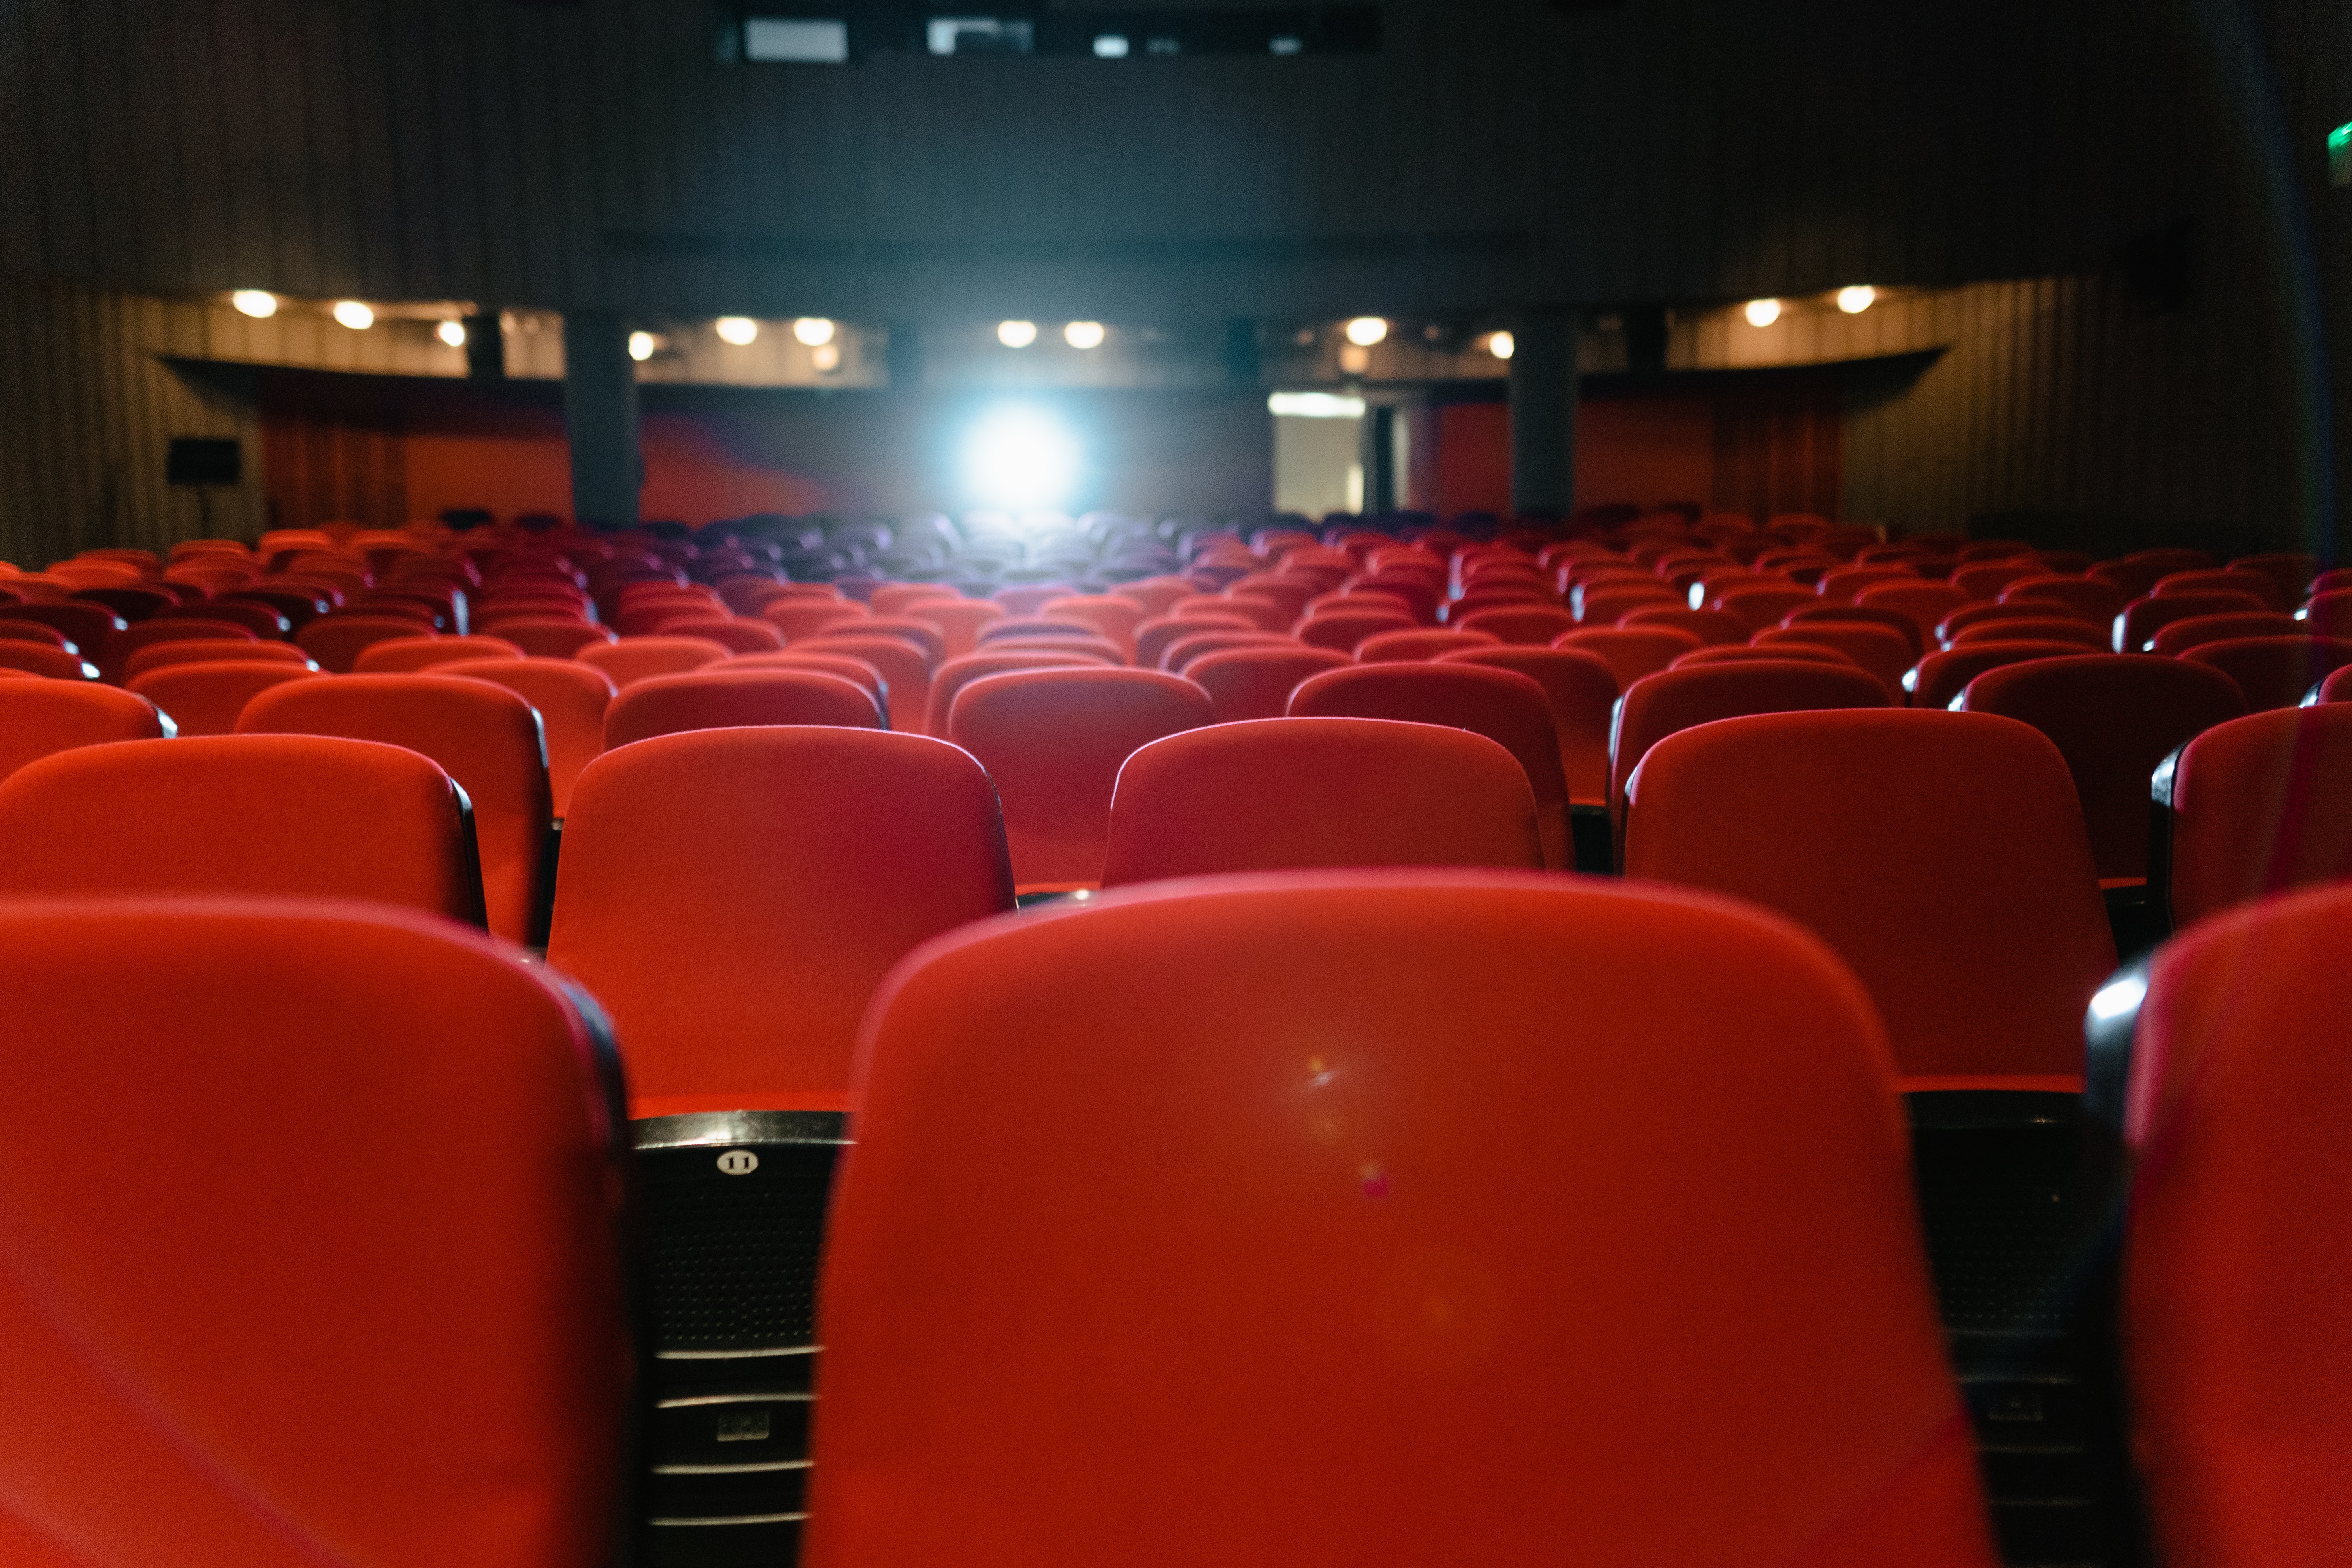   Sichere Kinohits fehlen | Wie Leipzigs Kinos mit dem Publikumsschwund umgehen  